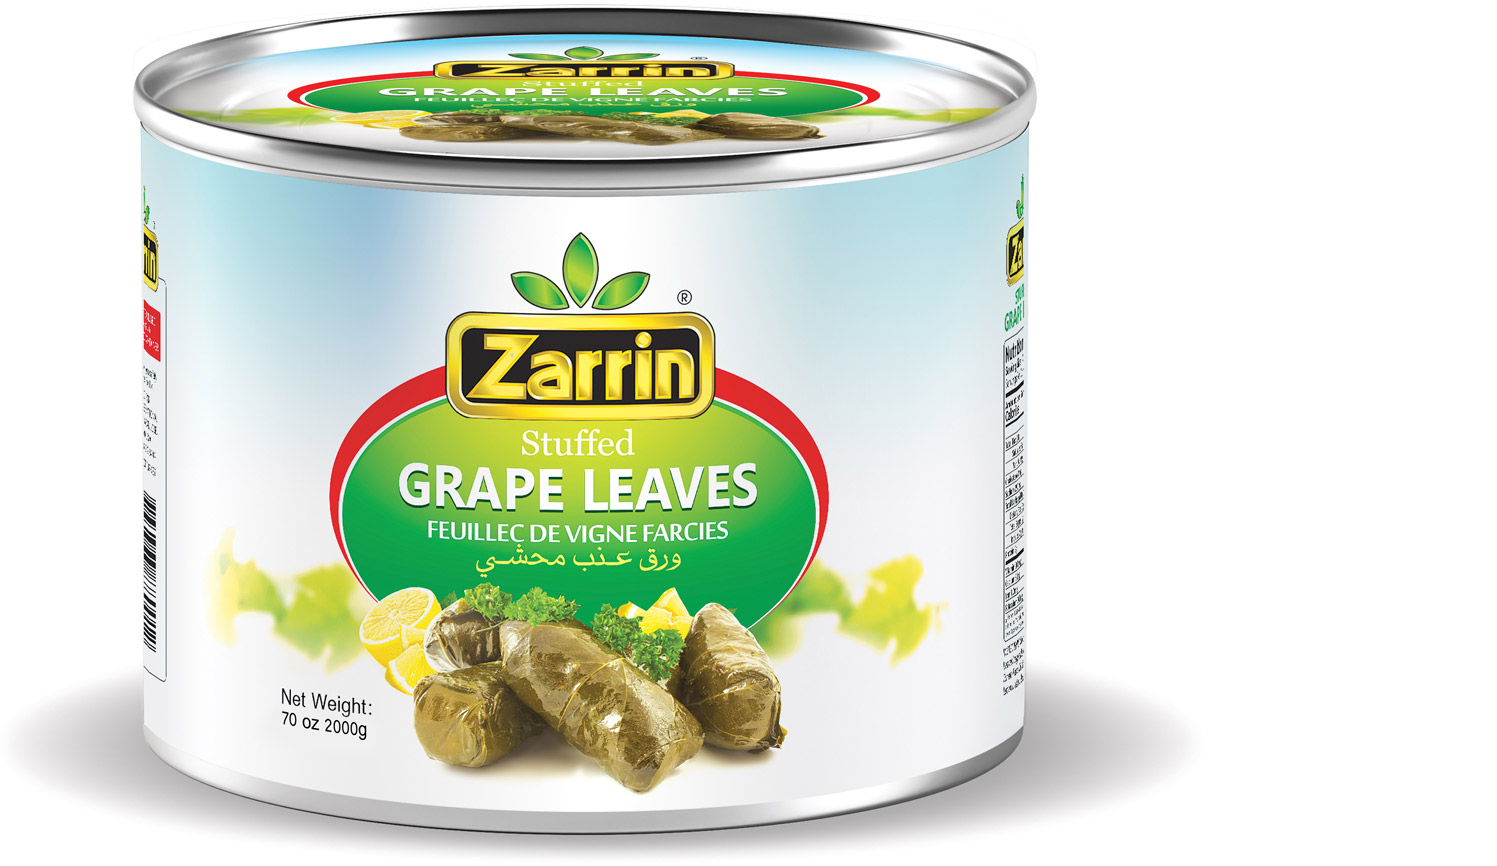 Zarrin stuffed grape leaves in 70 oz tin can.